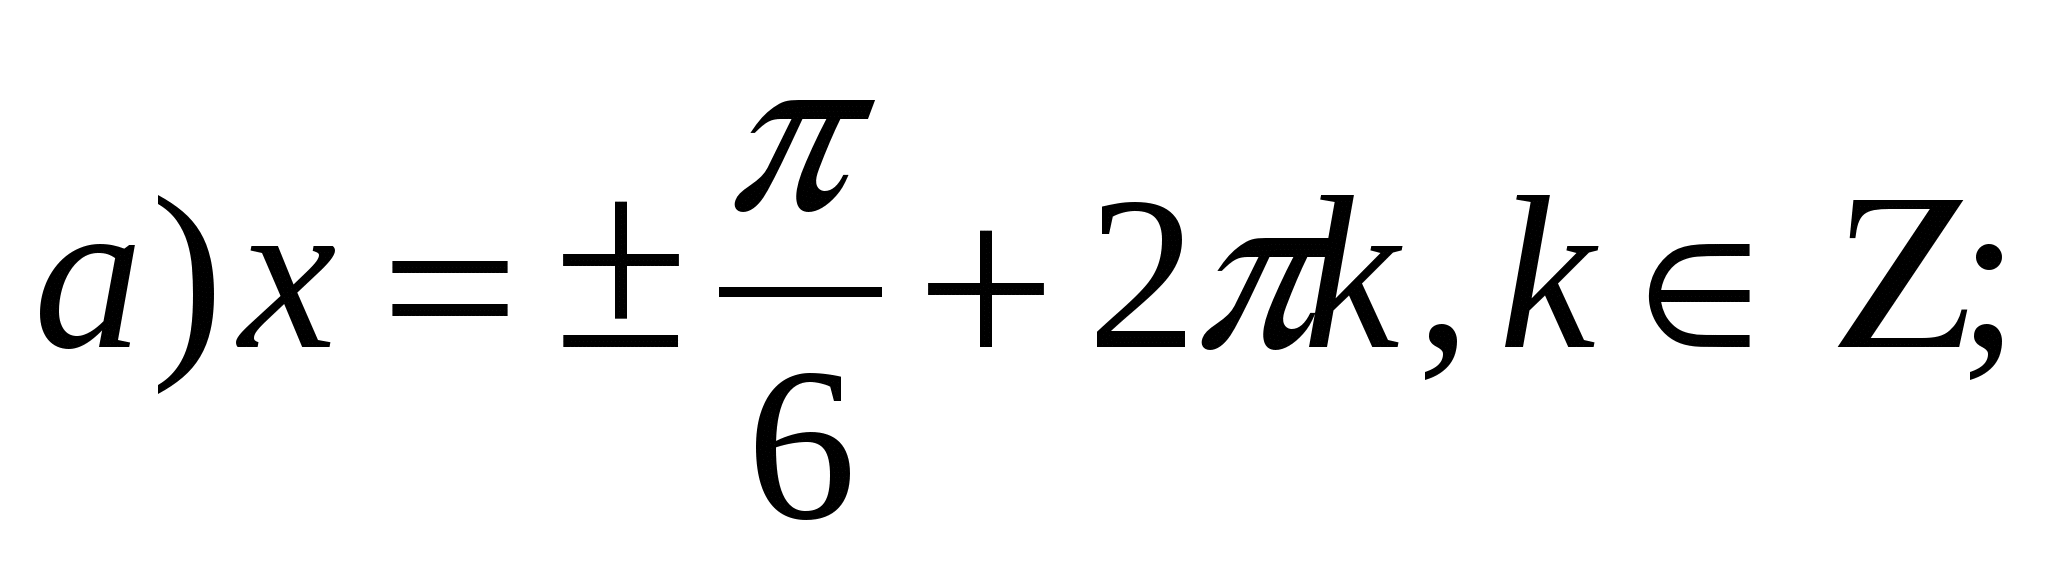 Урок математики «Простейшие тригонометрические уравнения»